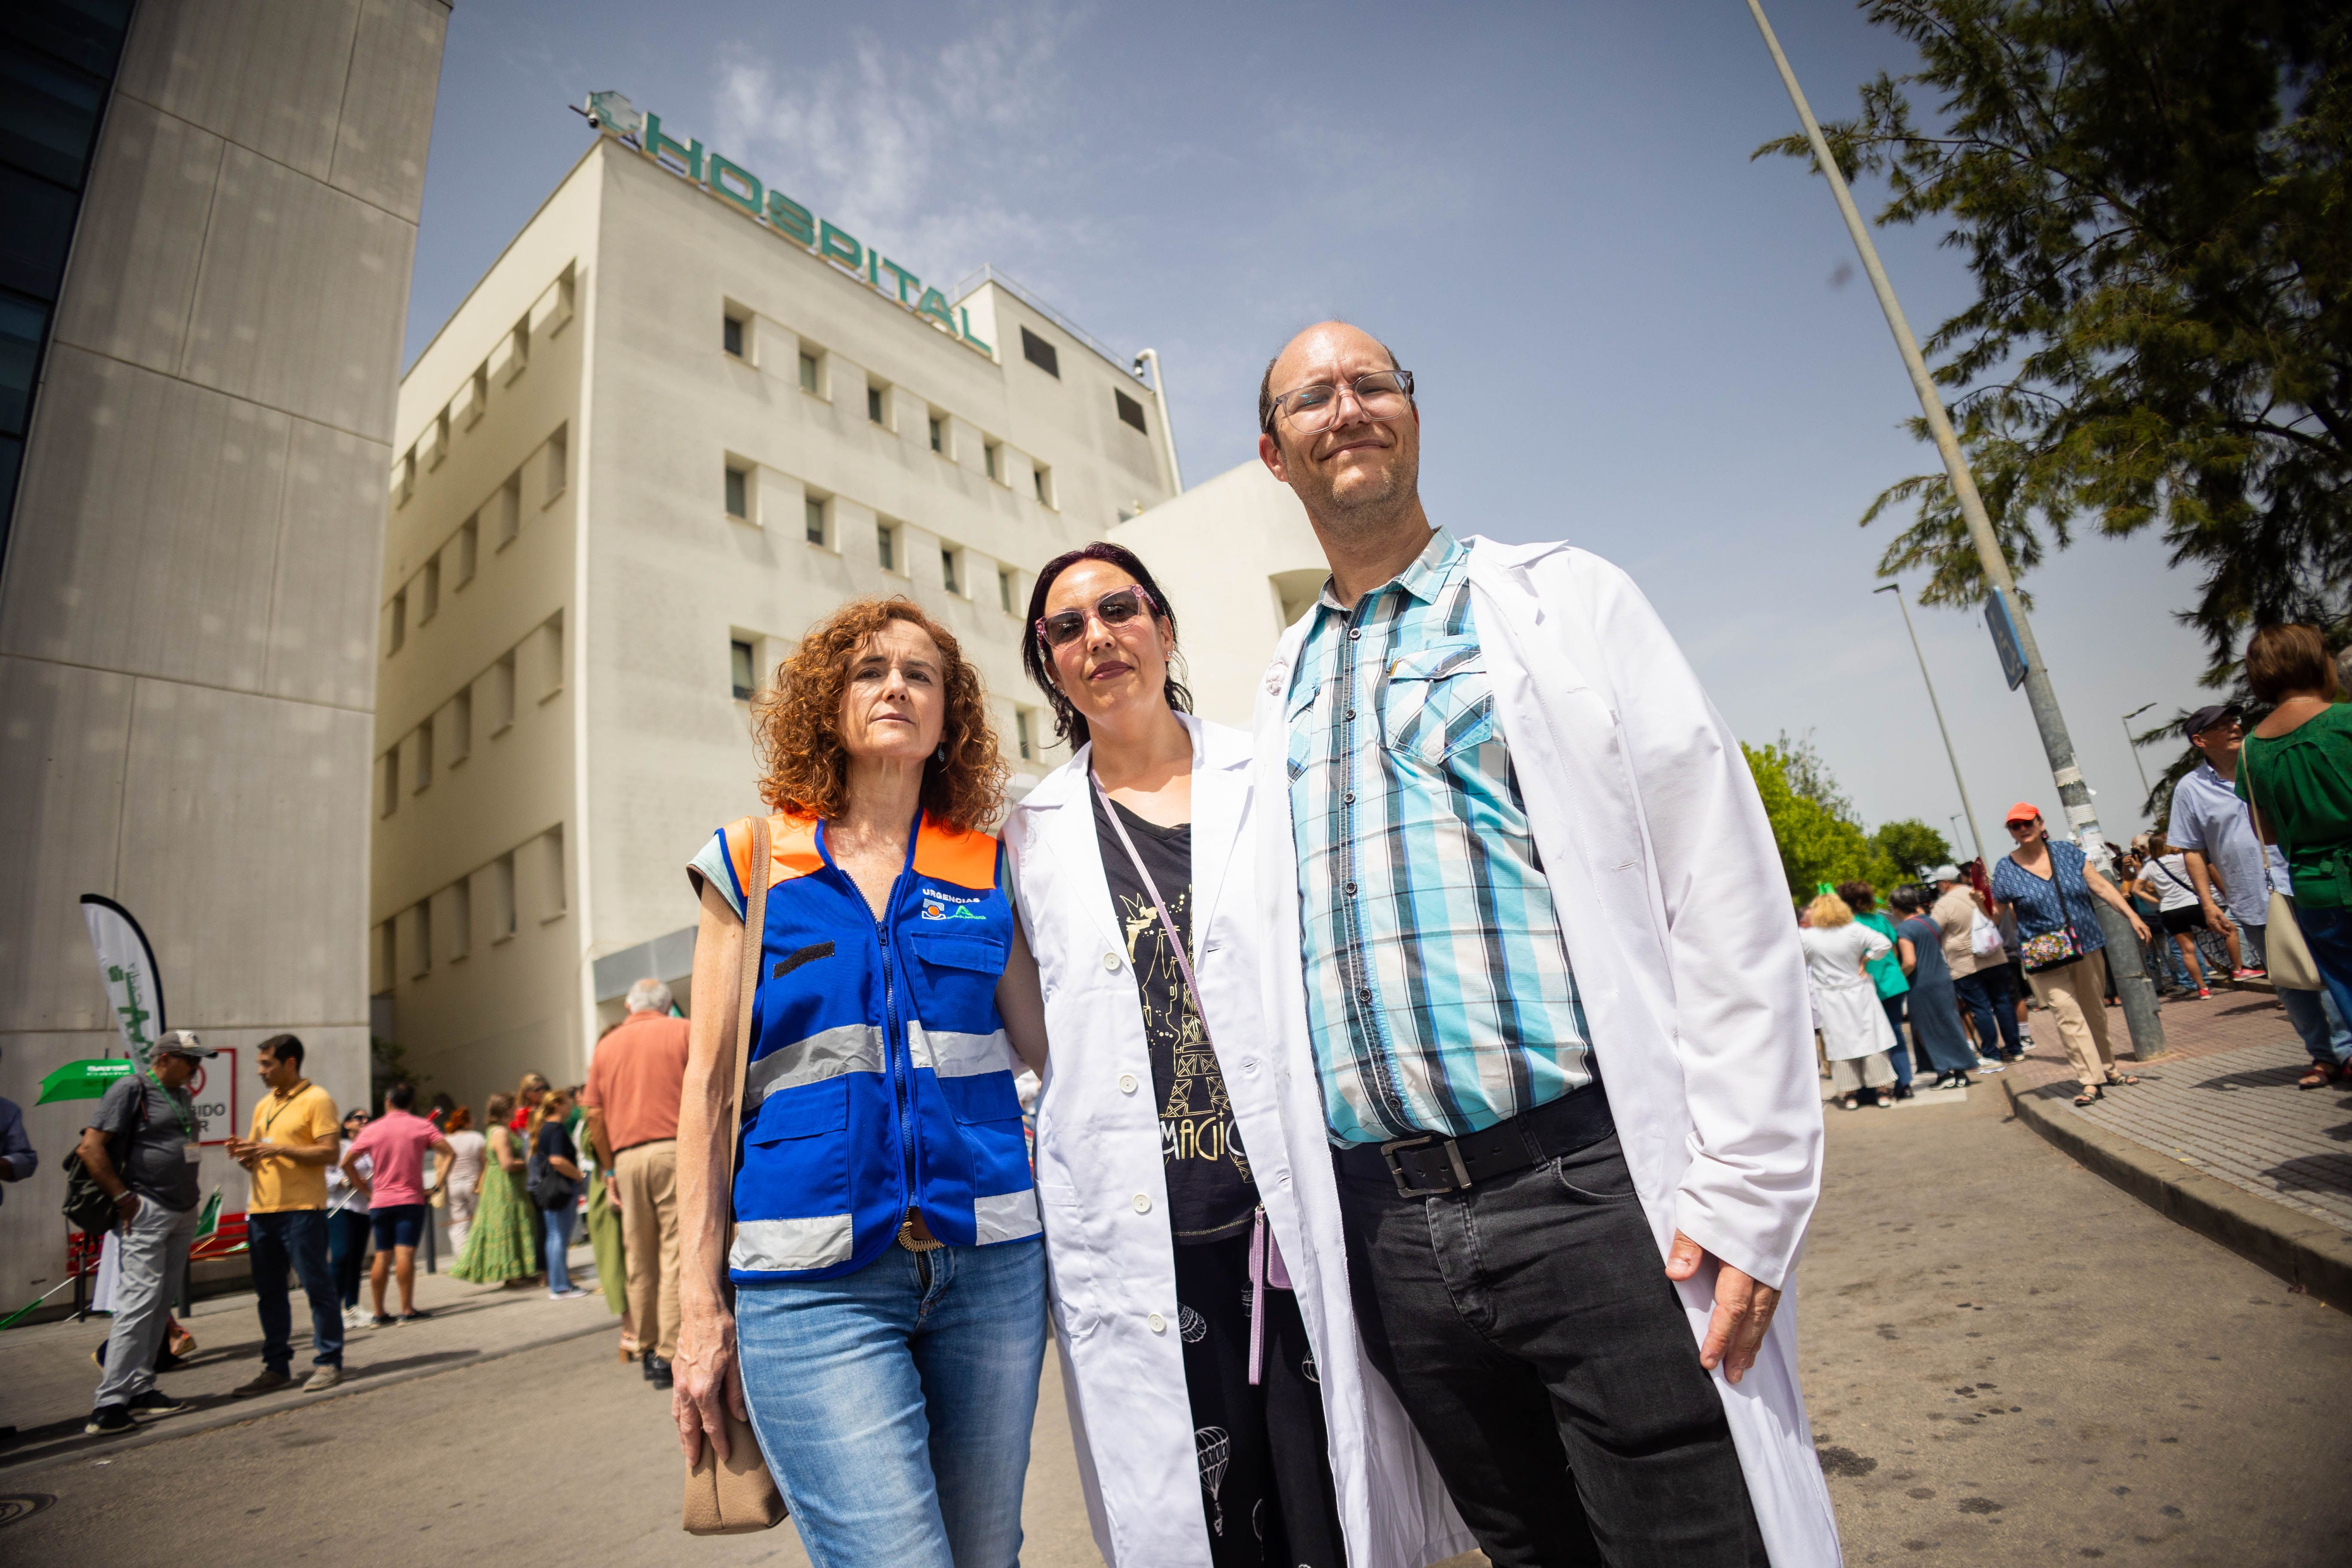 Nuria, Vanessa y José Carlos, enfermera, médica de familia y hematólogo, se sinceran sobre la situación del sistema sanitario y su día a día en el Servicio Andaluz de Salud, con el Hospital de Jerez al fondo.